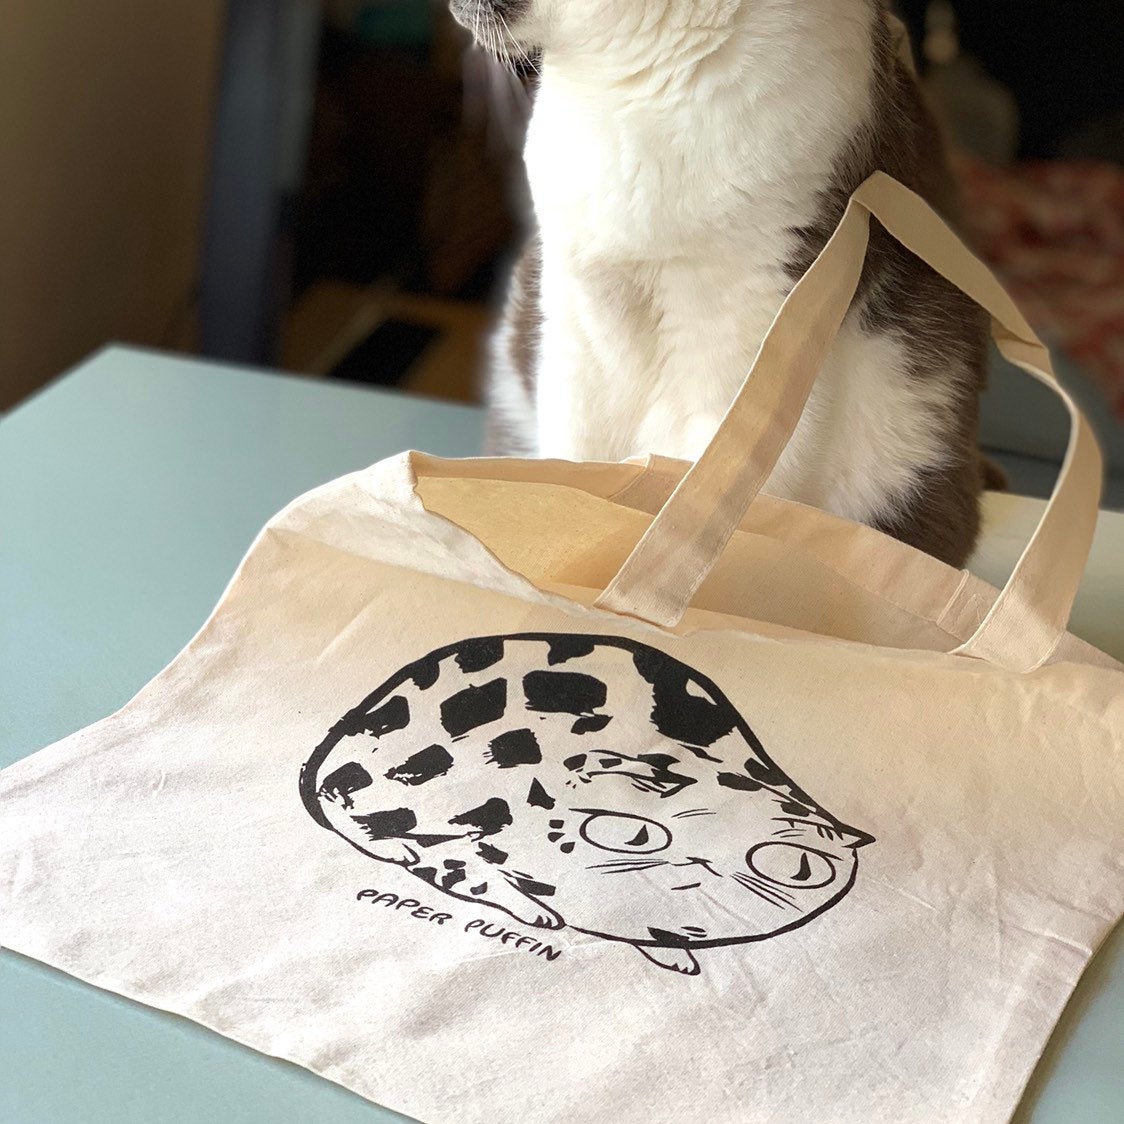 Paper Puffin Cat Tote Bag – PaperPuffin